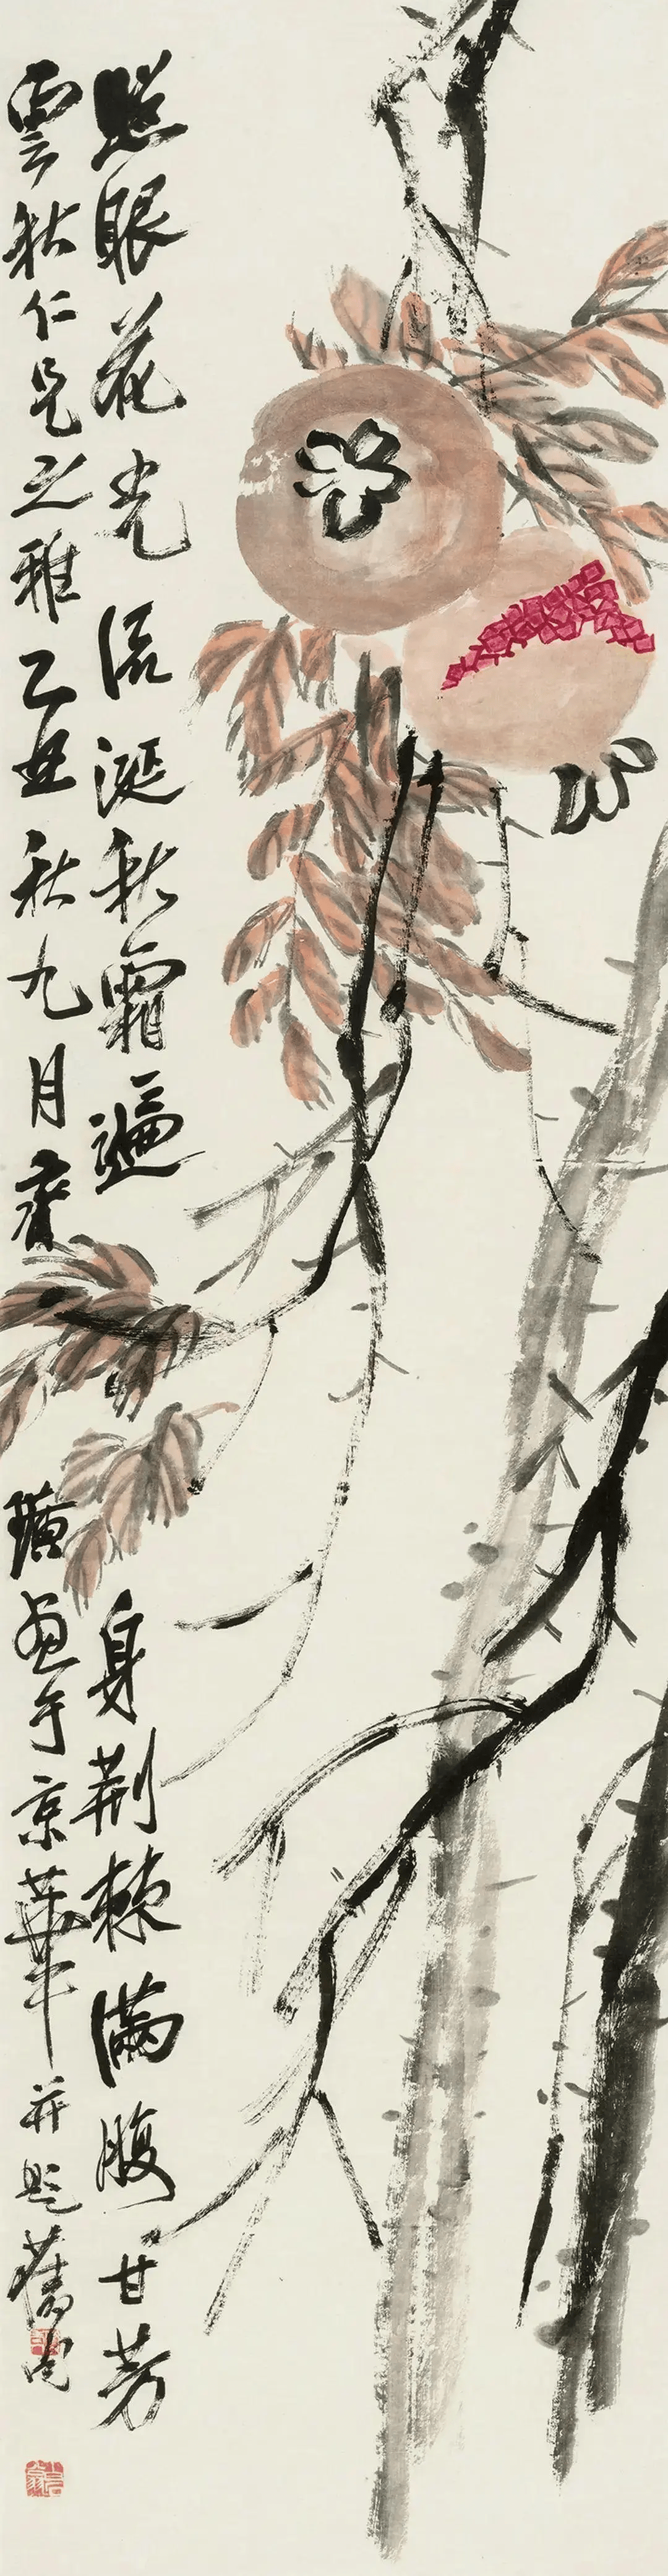 齐白石的花鸟画传承了中国花鸟画艺术传统与审美并加以创新,这种独创